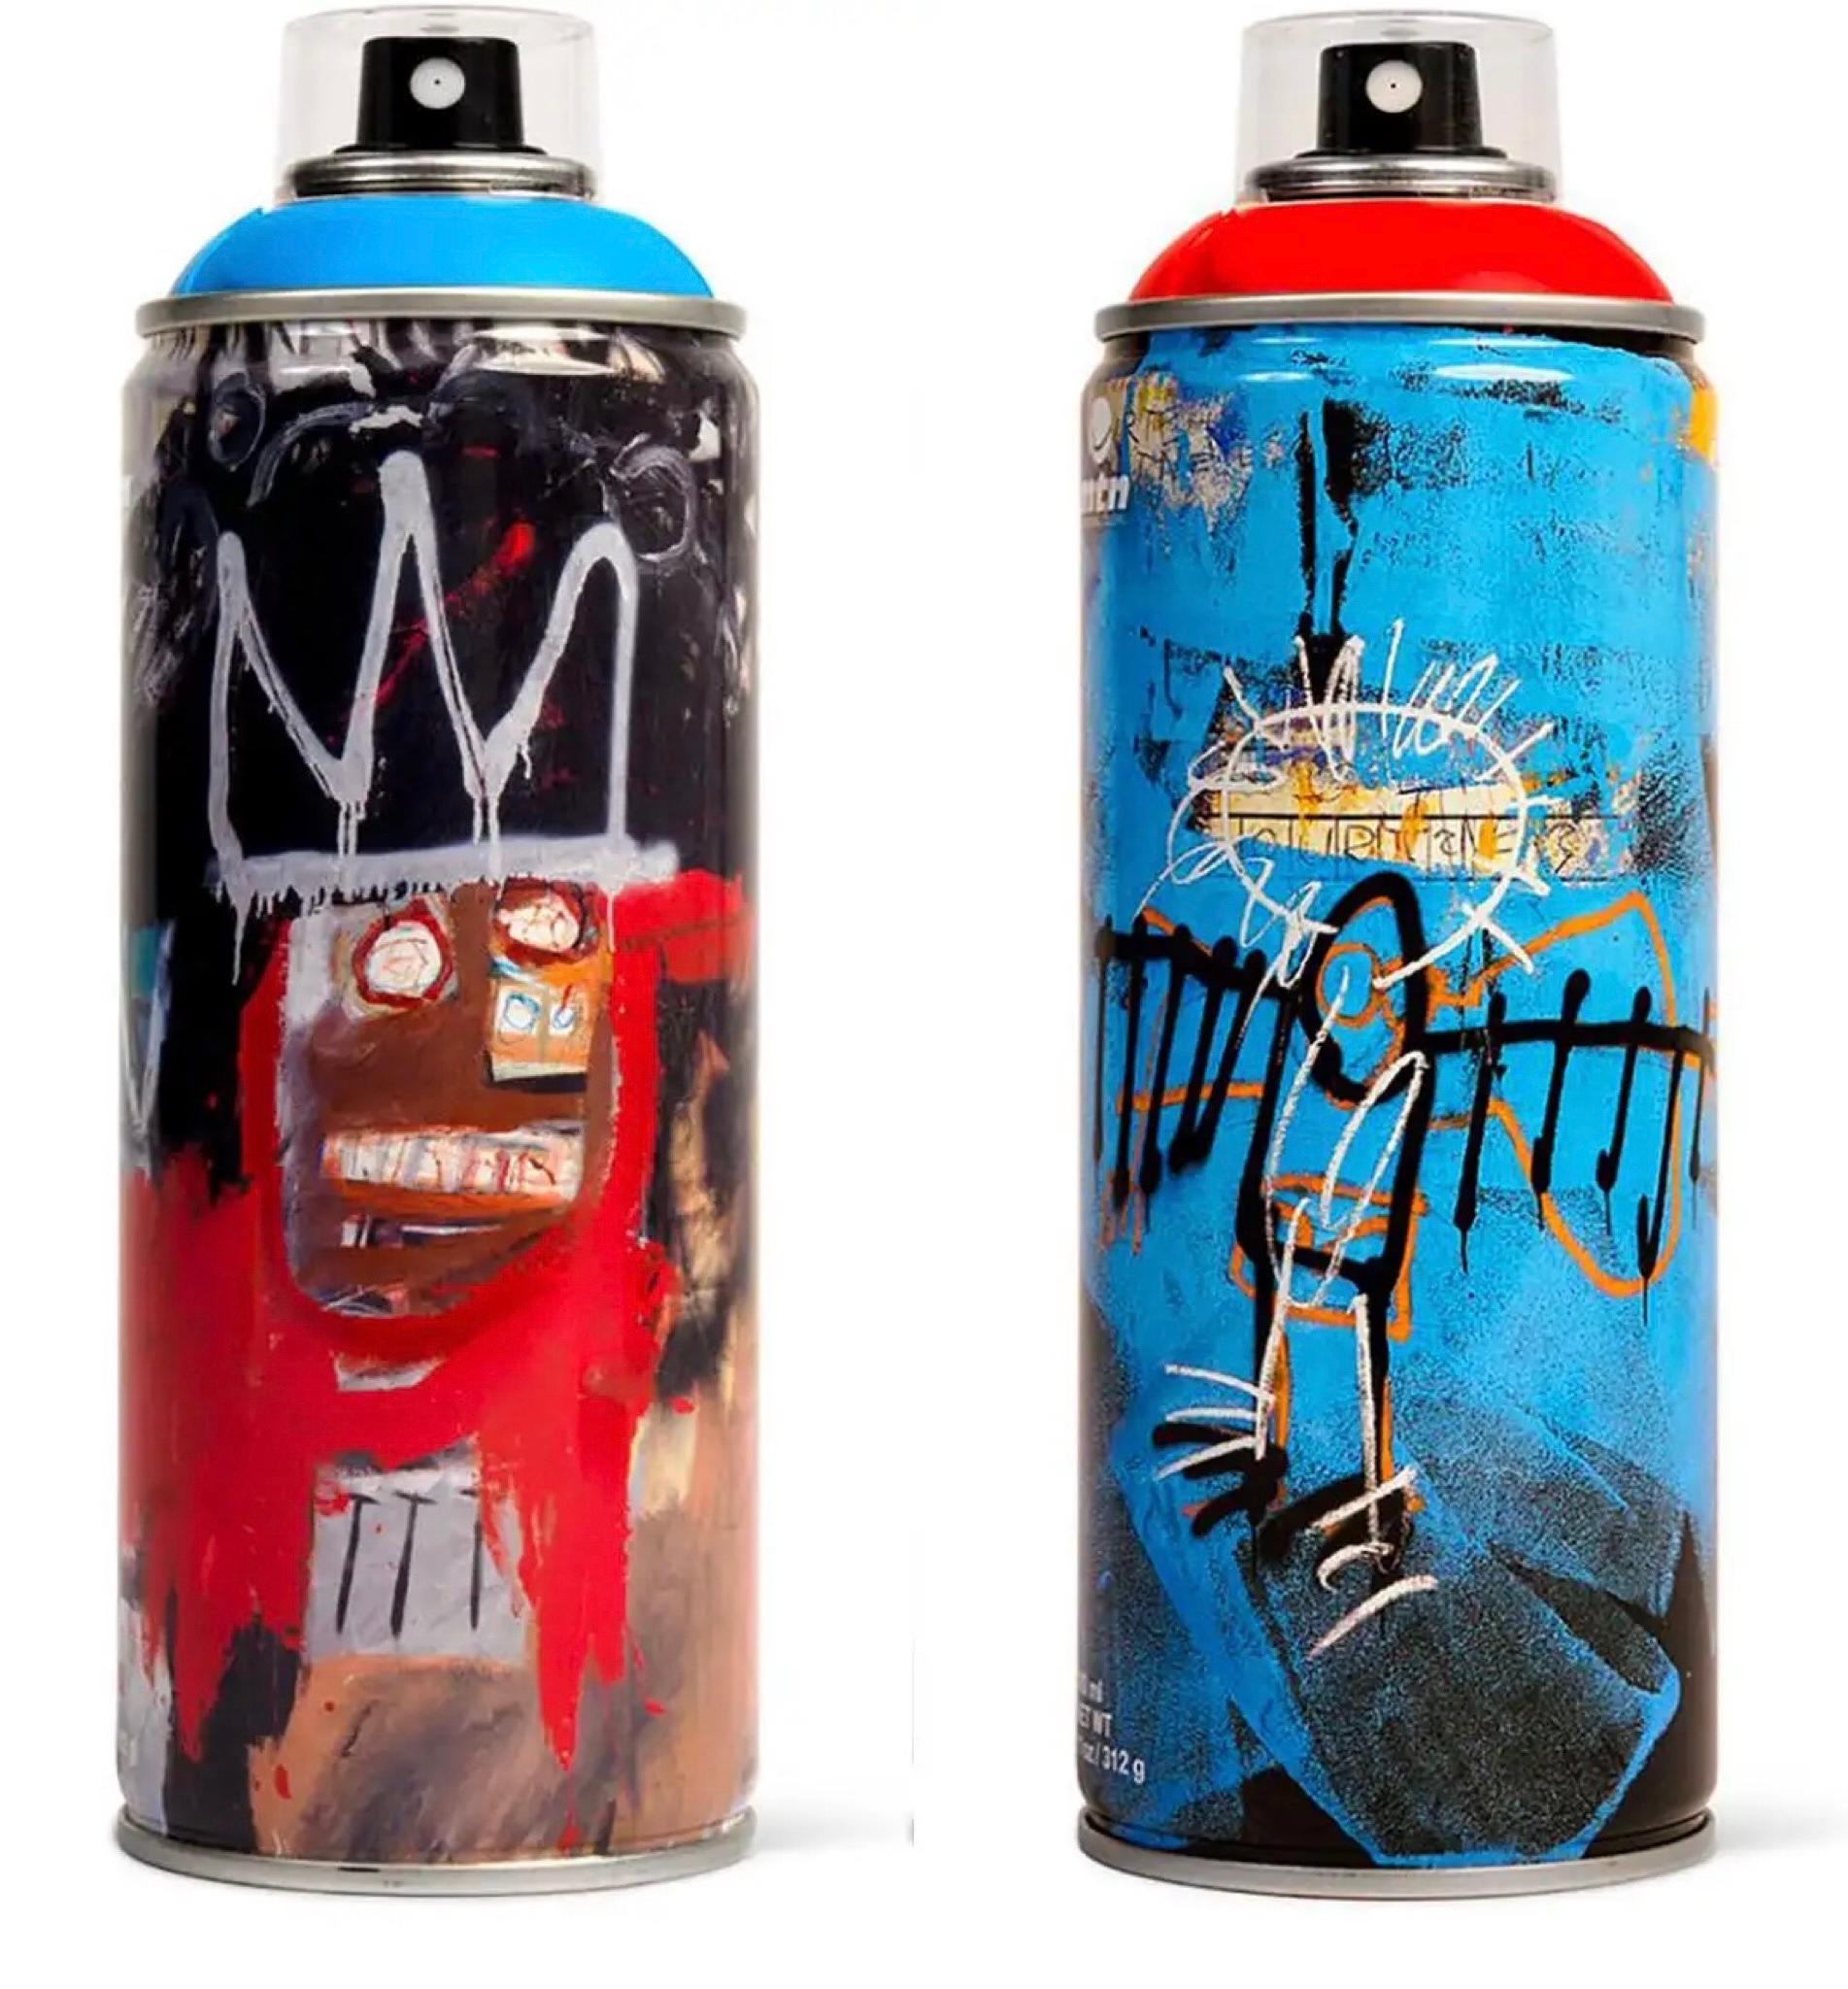 Canne à peinture Basquiat en édition limitée (set de 2) - Print de after Jean-Michel Basquiat